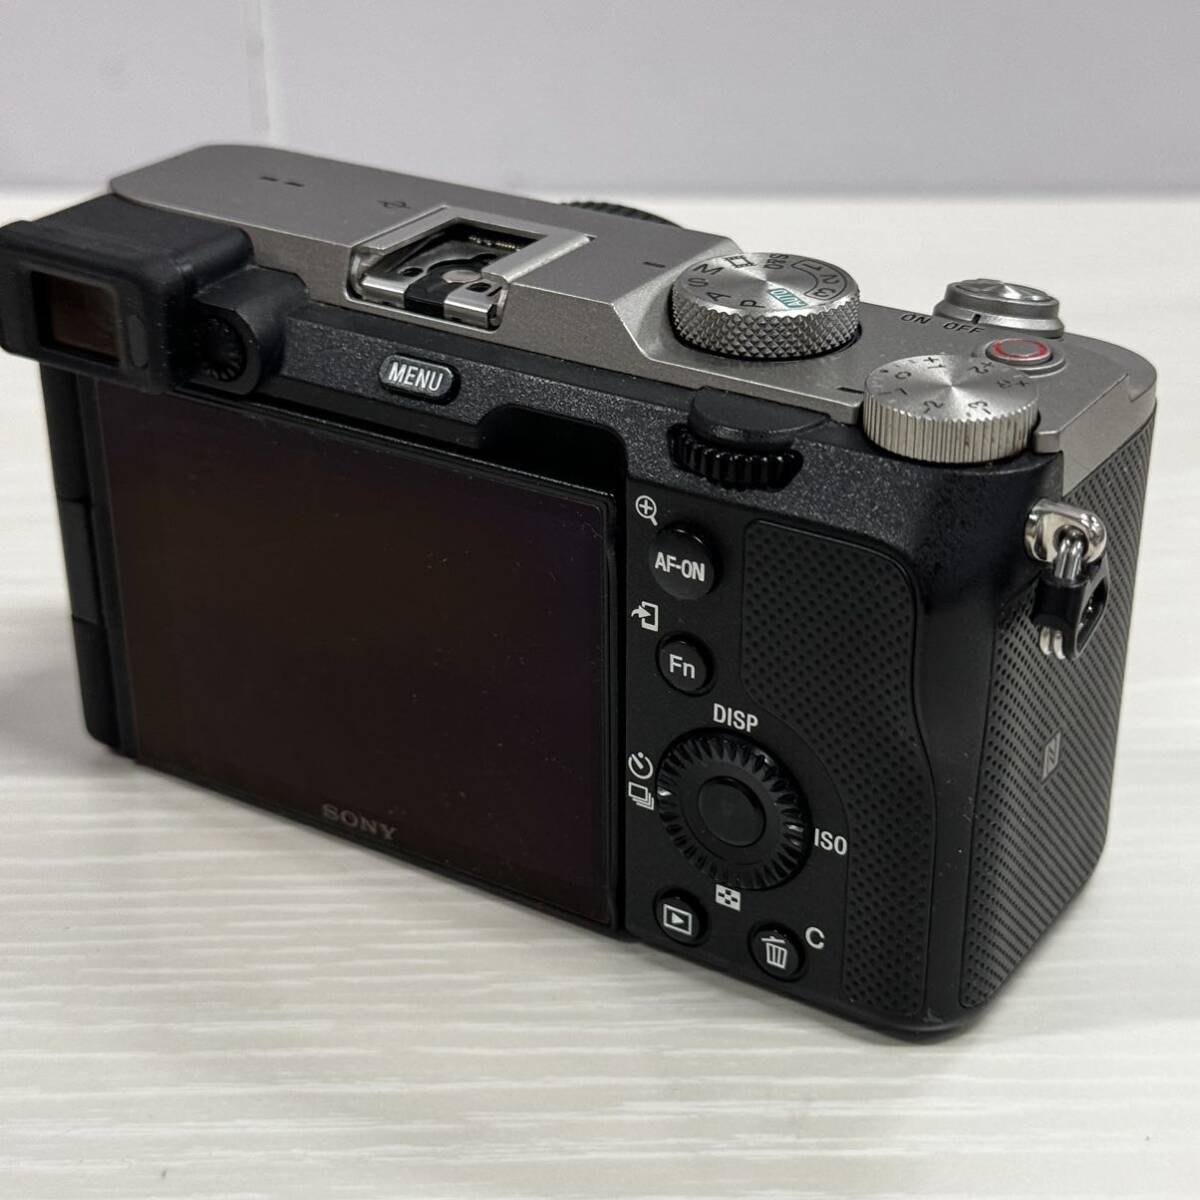  Sony (SONY) полный размер беззеркальный однообъективный камера α7C корпус ( линзы нет ) ILCE-7C черный цифровая камера 